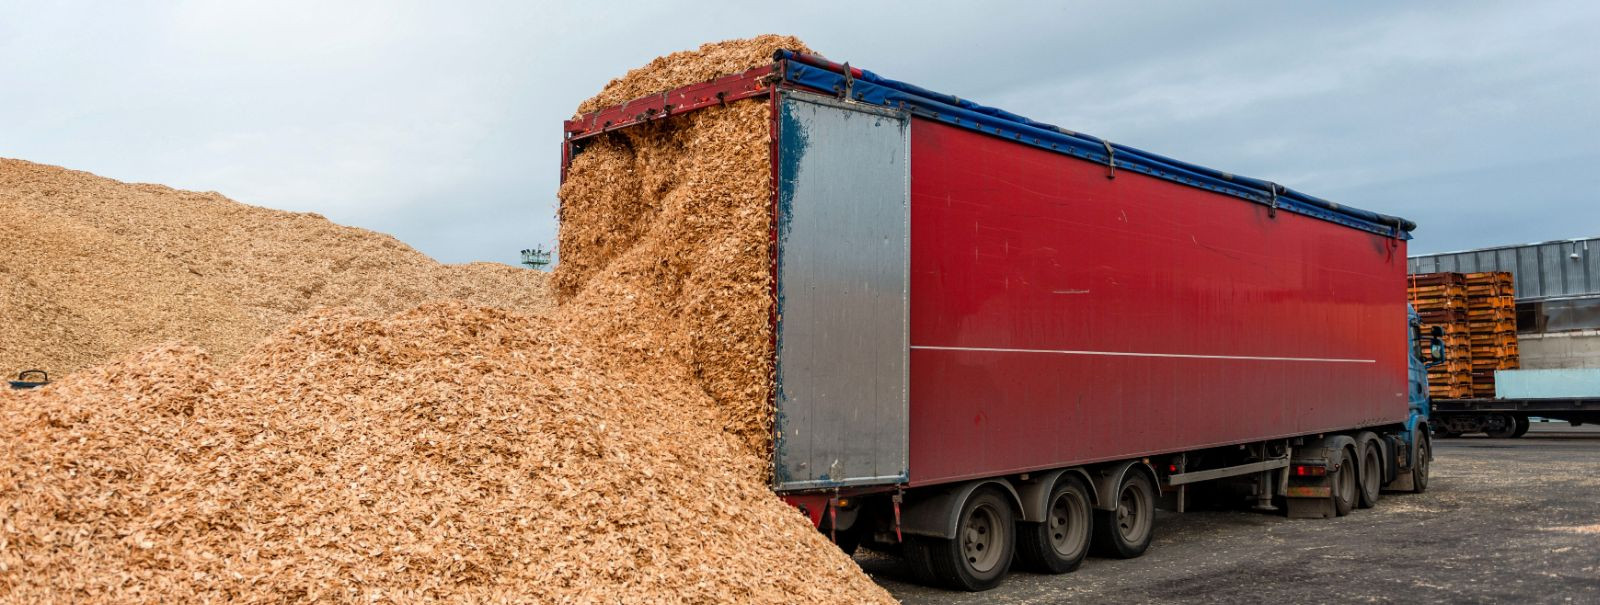 Puiduhake on metsanduse ja puidutöötlemise tööstuste kõrvalprodukt, mida kasutatakse tavaliselt biomassi kütusena, multšina maastikukujunduses, toorainena paber